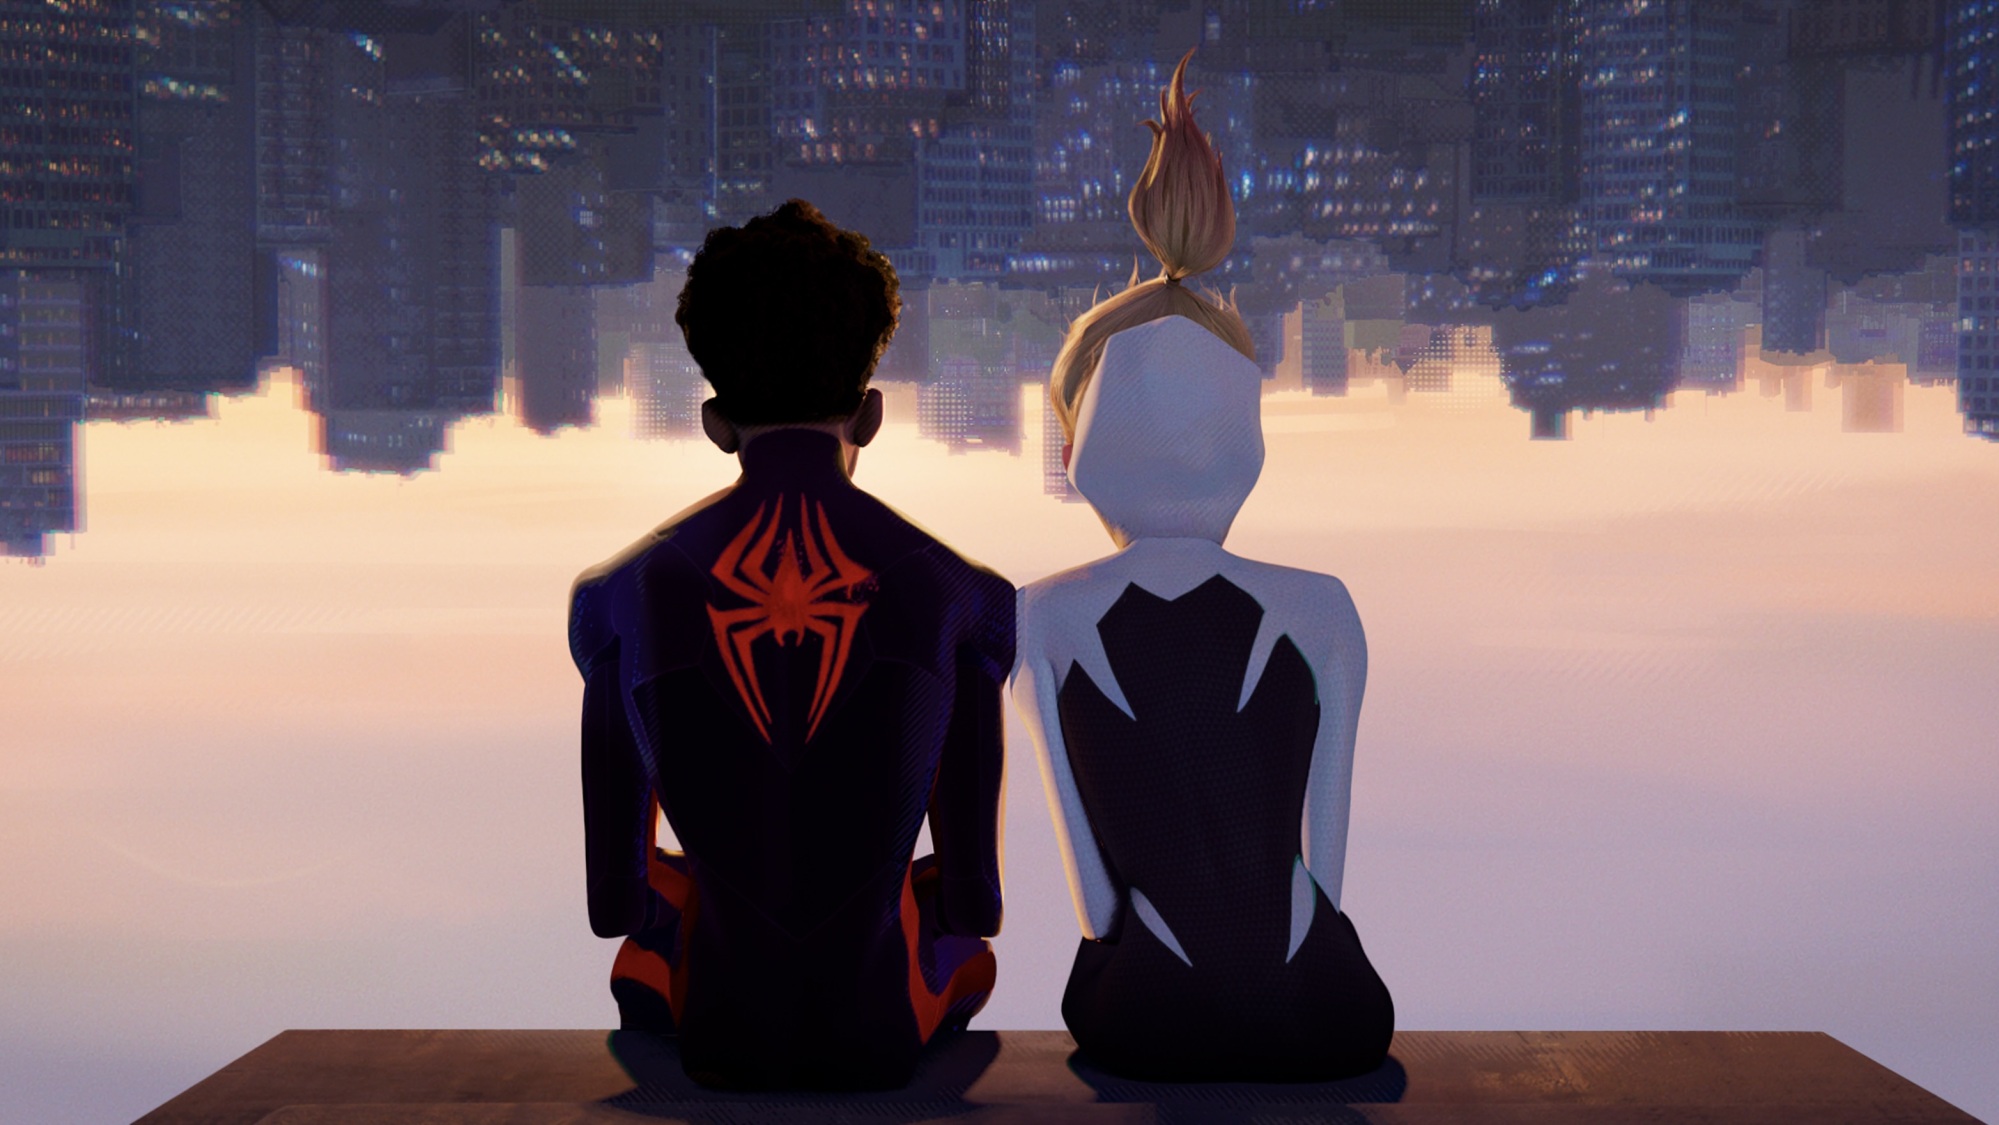 Miles Morales dans son Spider-Man rouge et noir et Gwen Stacy dans son costume Spider-Woman blanc et noir sont assis à l'envers sur le rebord d'un bâtiment.